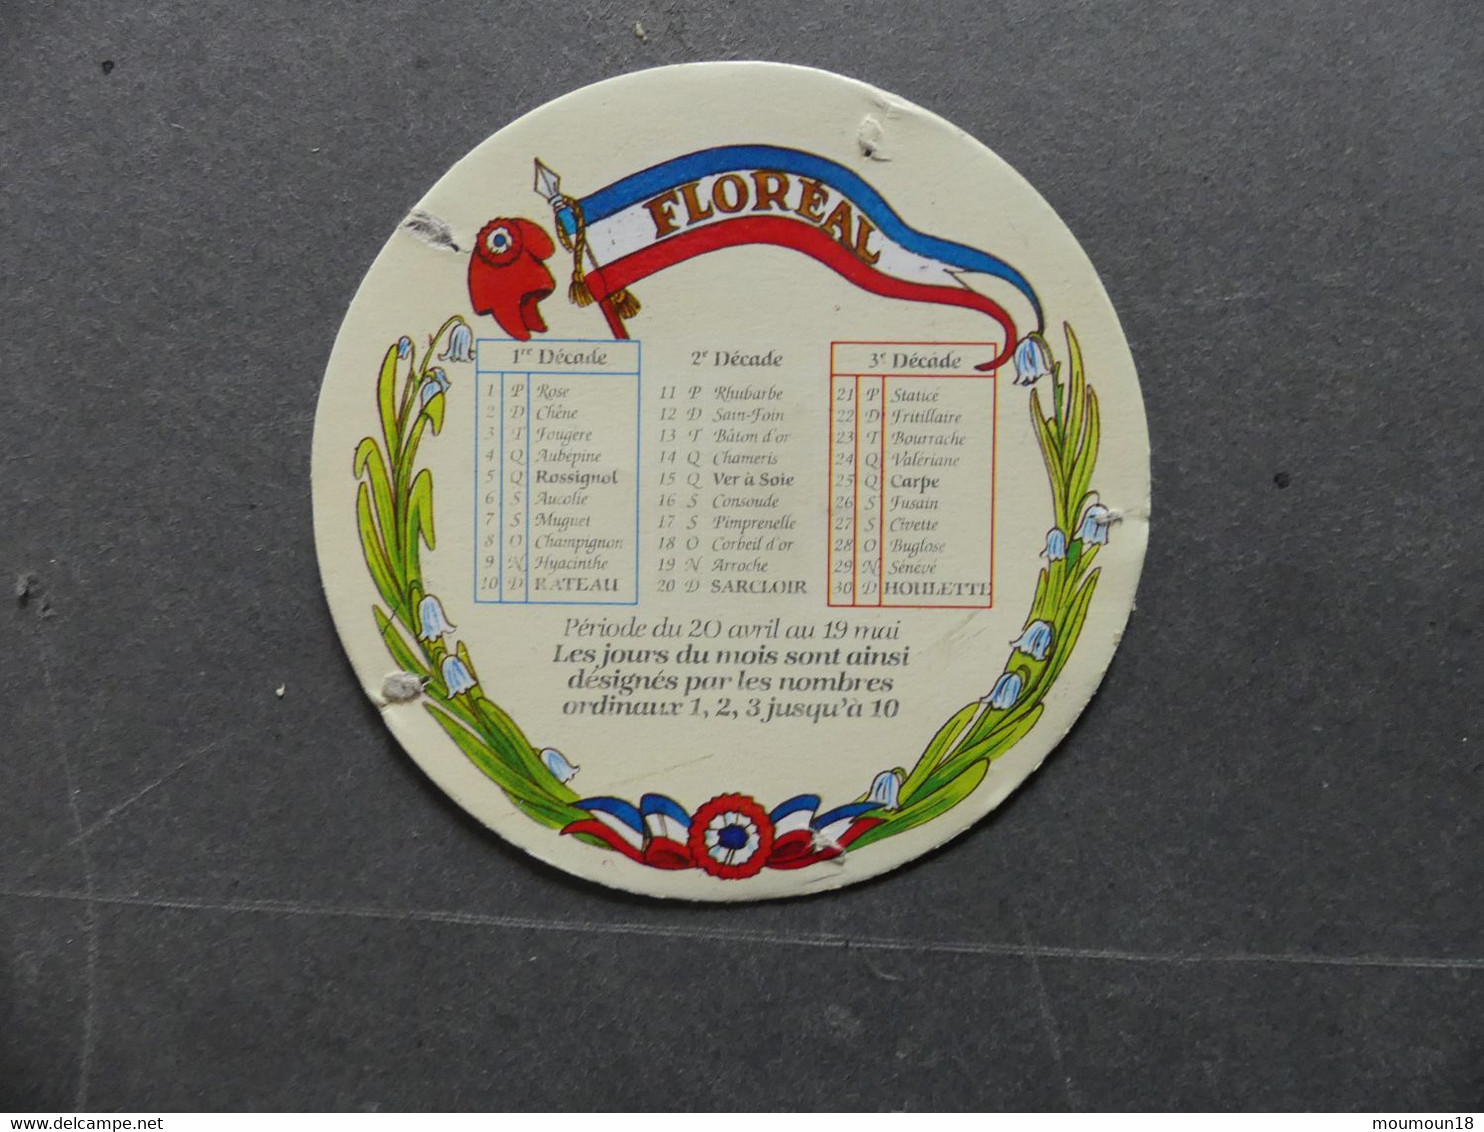 Calendrier révolutionnaire Série complète de 12 dessus de couvercle de boîte de fromage